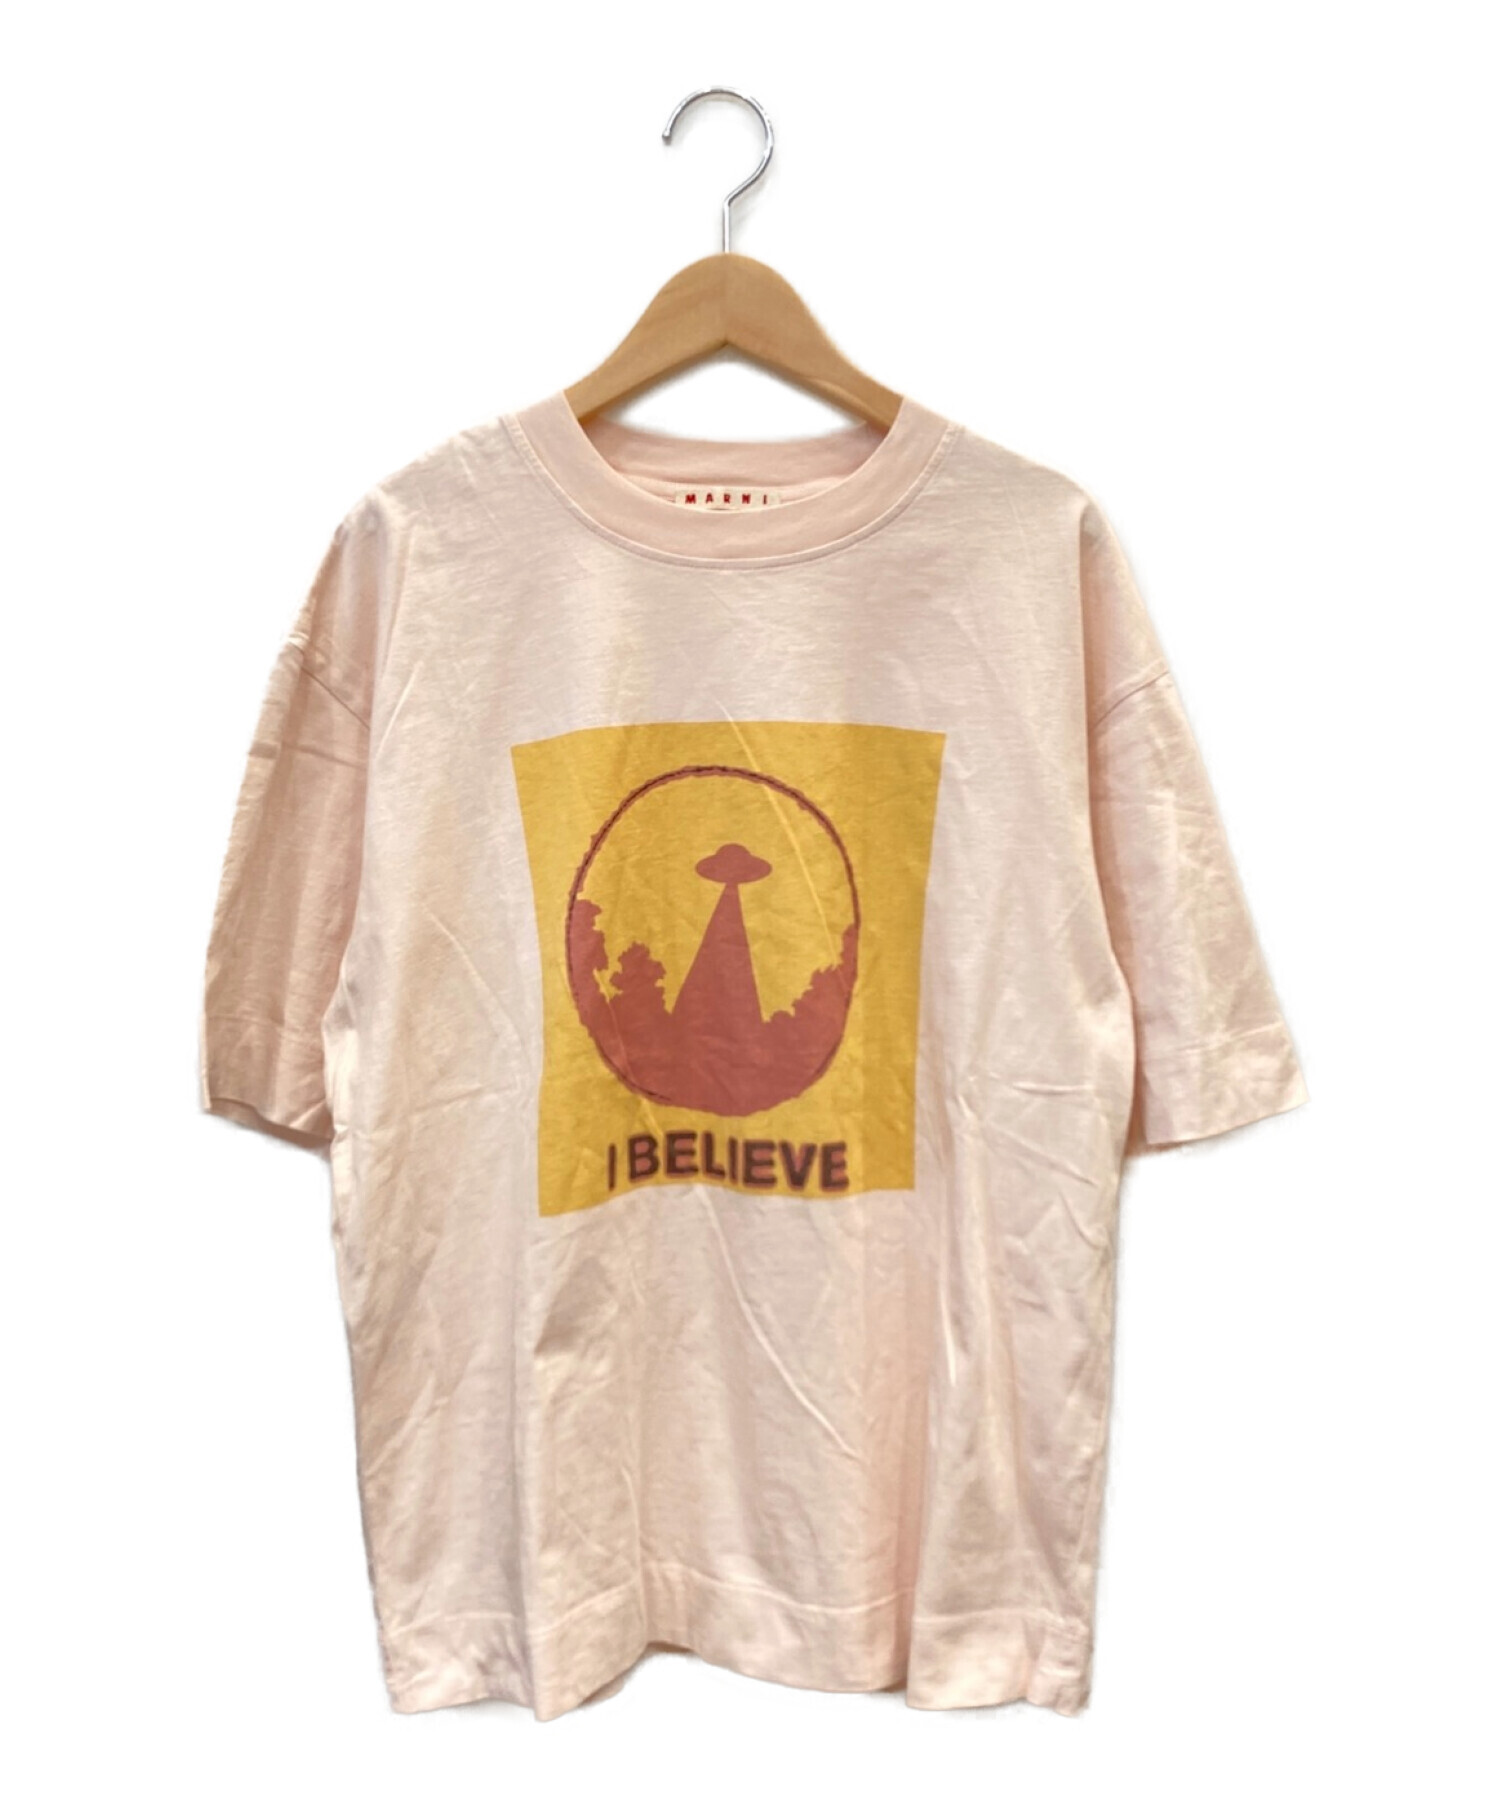 MARNI (マルニ) プリントオーバーサイズTシャツ ピンク サイズ:38